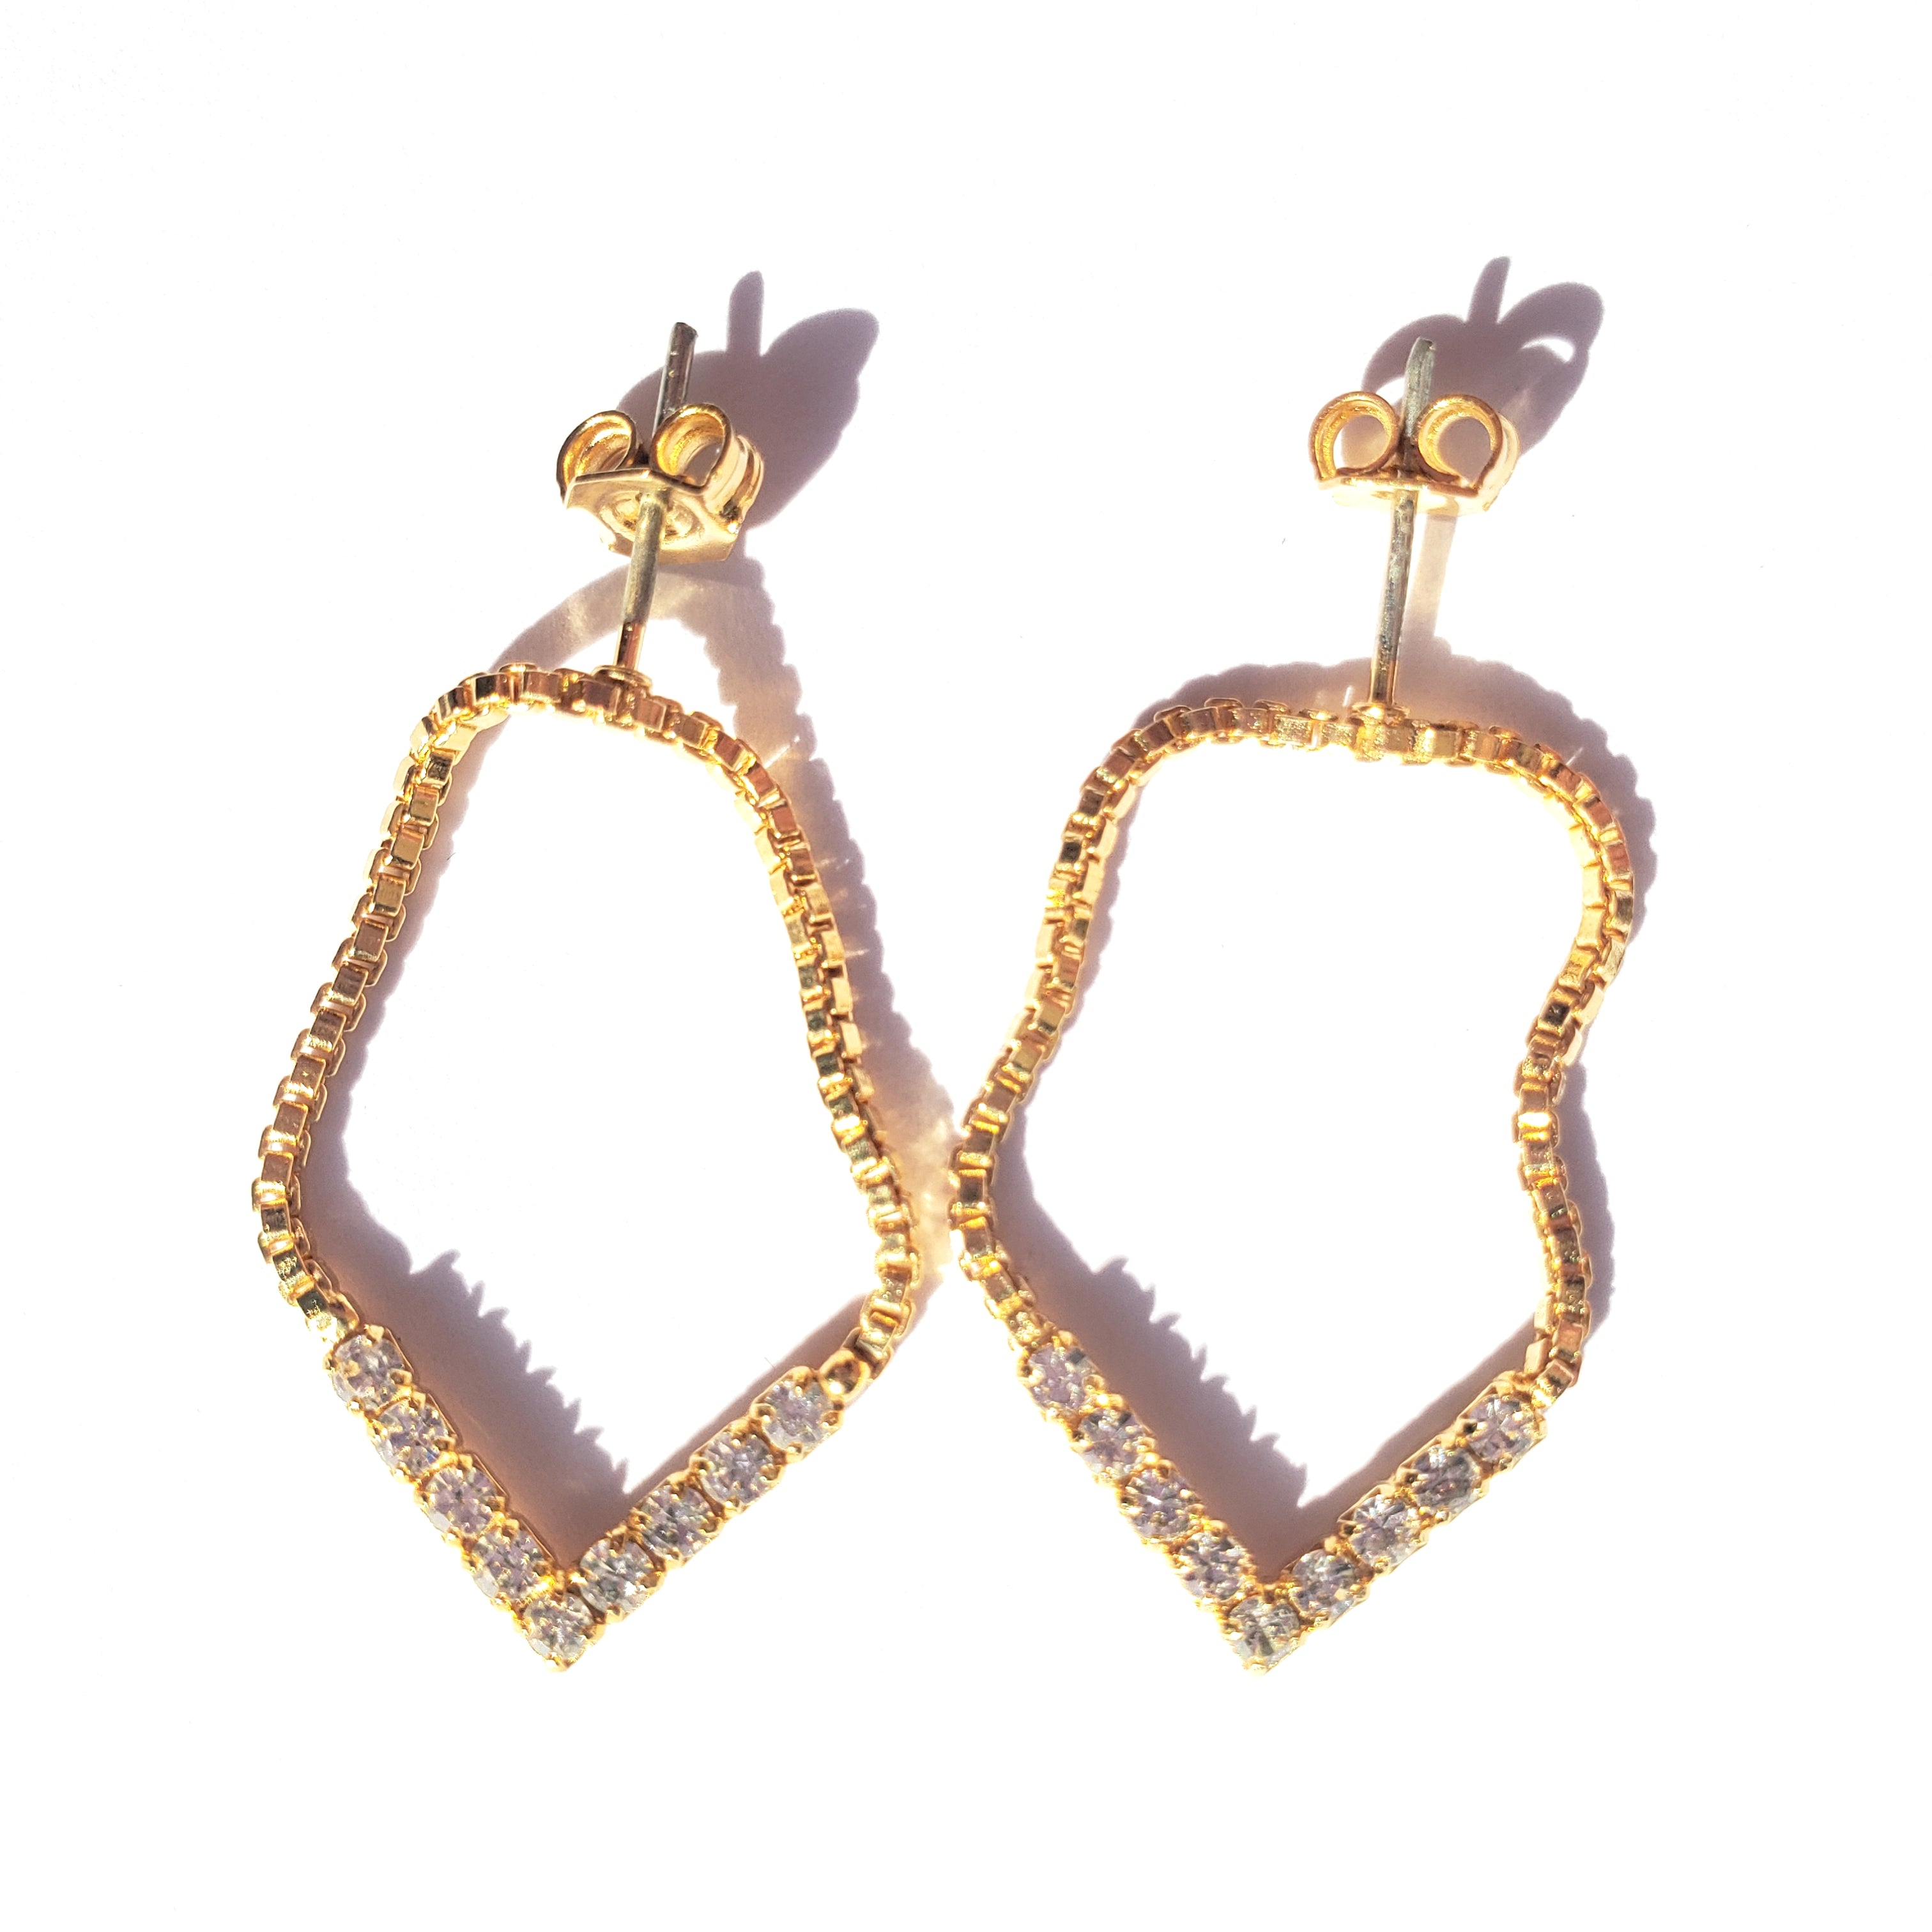 Hanging Crystal Tennis Chain Earrings